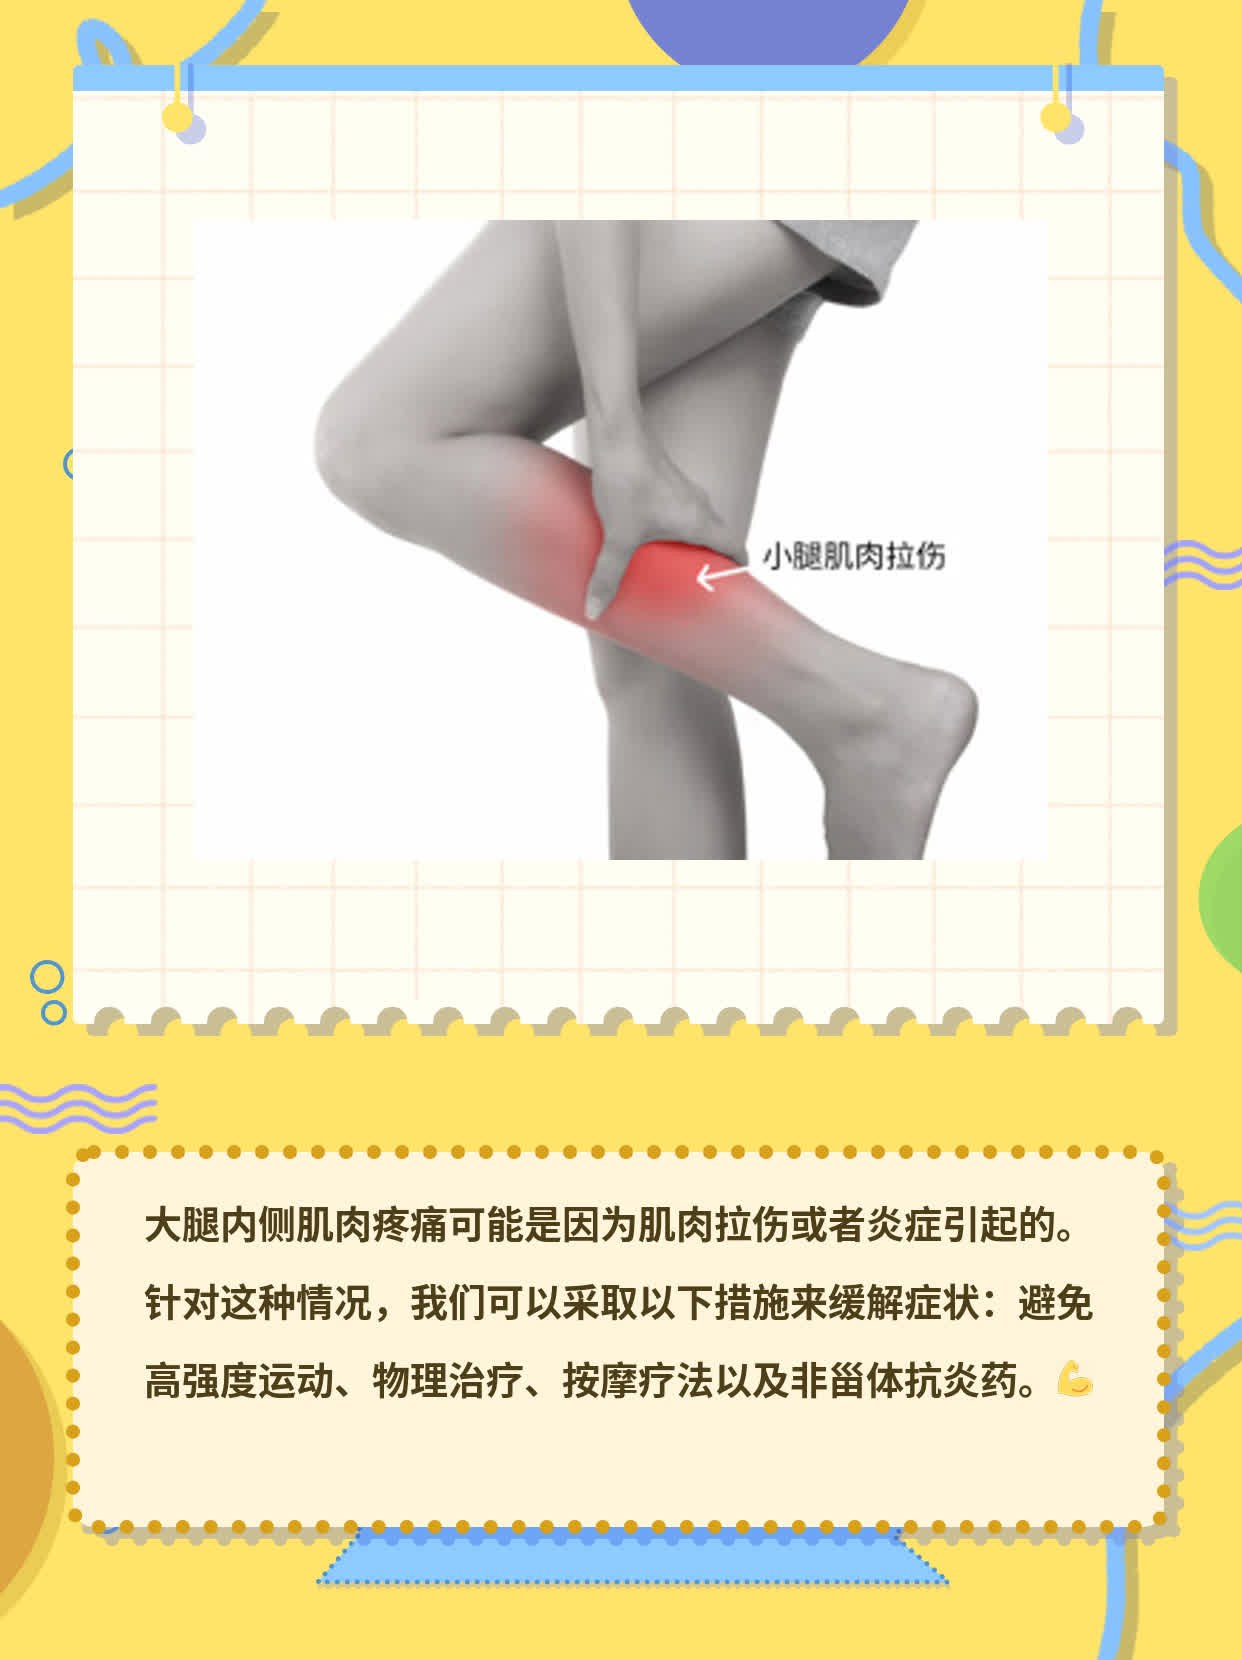 「腿痛」：抬腿时大腿内侧肌肉疼痛的原因及缓解方法